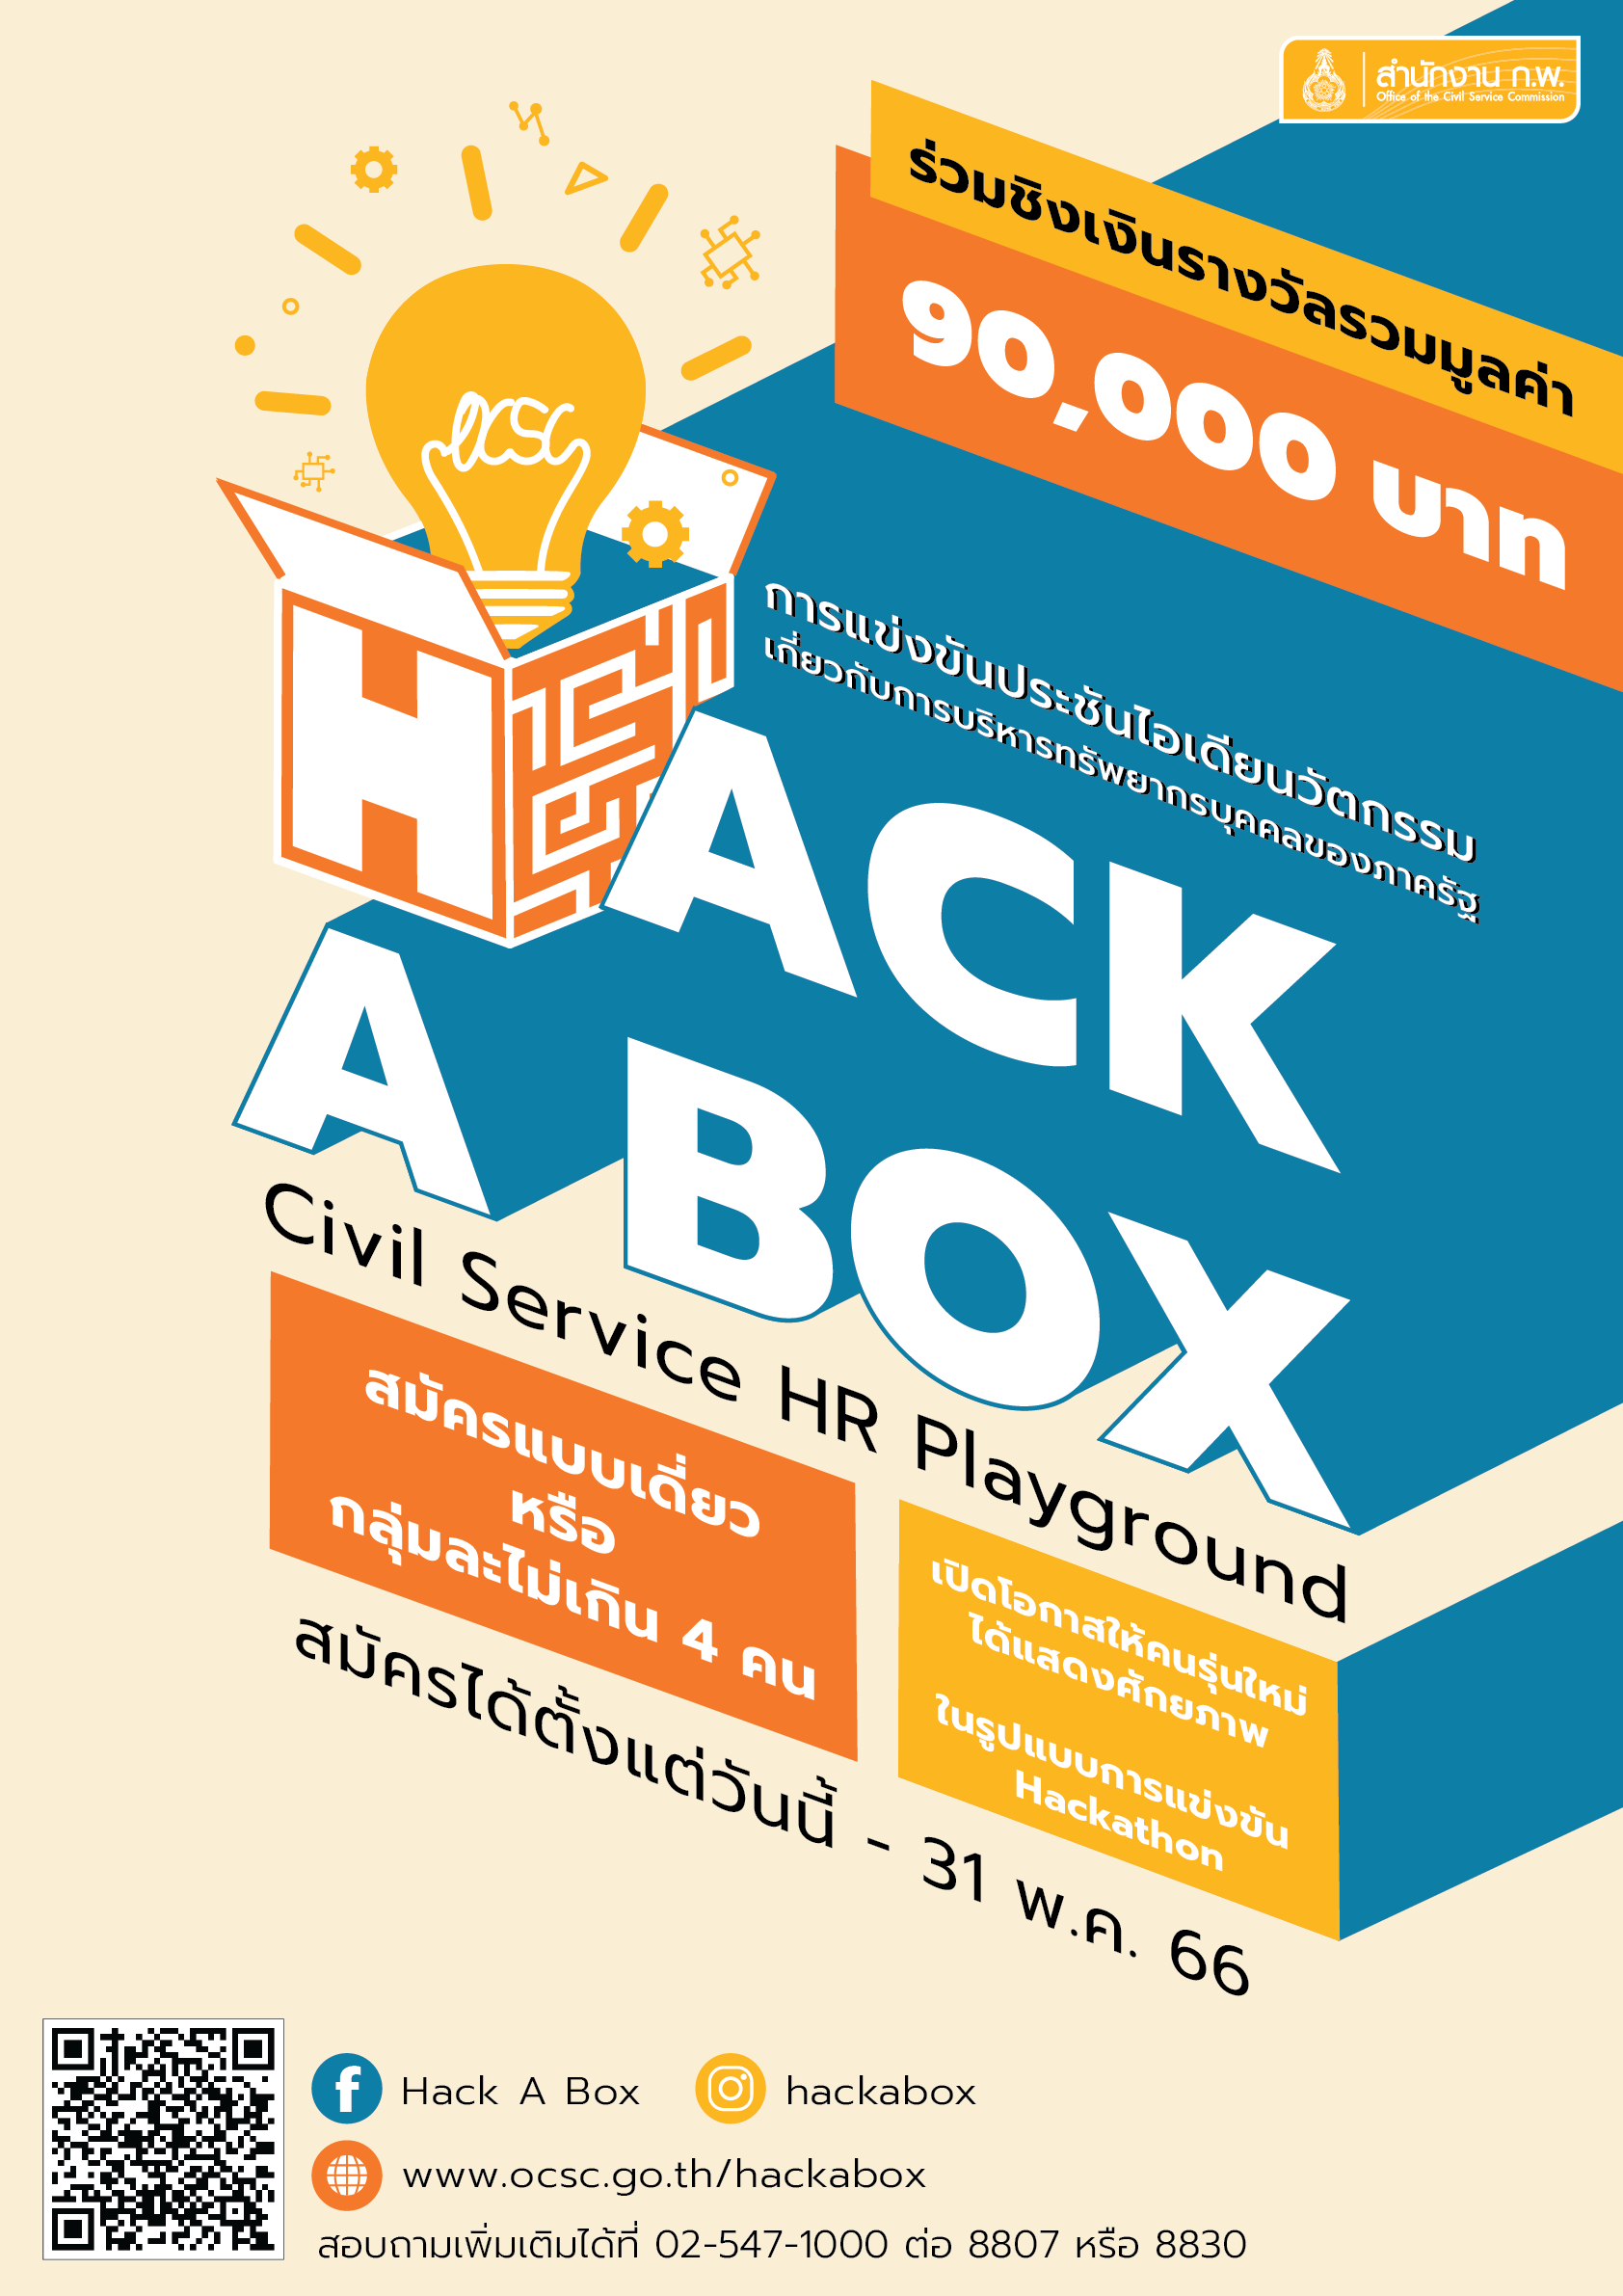 สำนักงาน ก.พ. ขอเชิญนักศึกษาที่สนใจ เข้าร่วมแข่งขันประชันไอเดียนวัตกรรมเกี่ยวกับการบริหารทรัพยากรบุคคลของภาครัฐ (Hack a box: Civil Service HR Playground) ในรูปแบบของการแข่งขันแฮกกะธอน (Hackathon) ชิงเงินรางวัลมูลค่ารวมกว่า 90,000 บาท